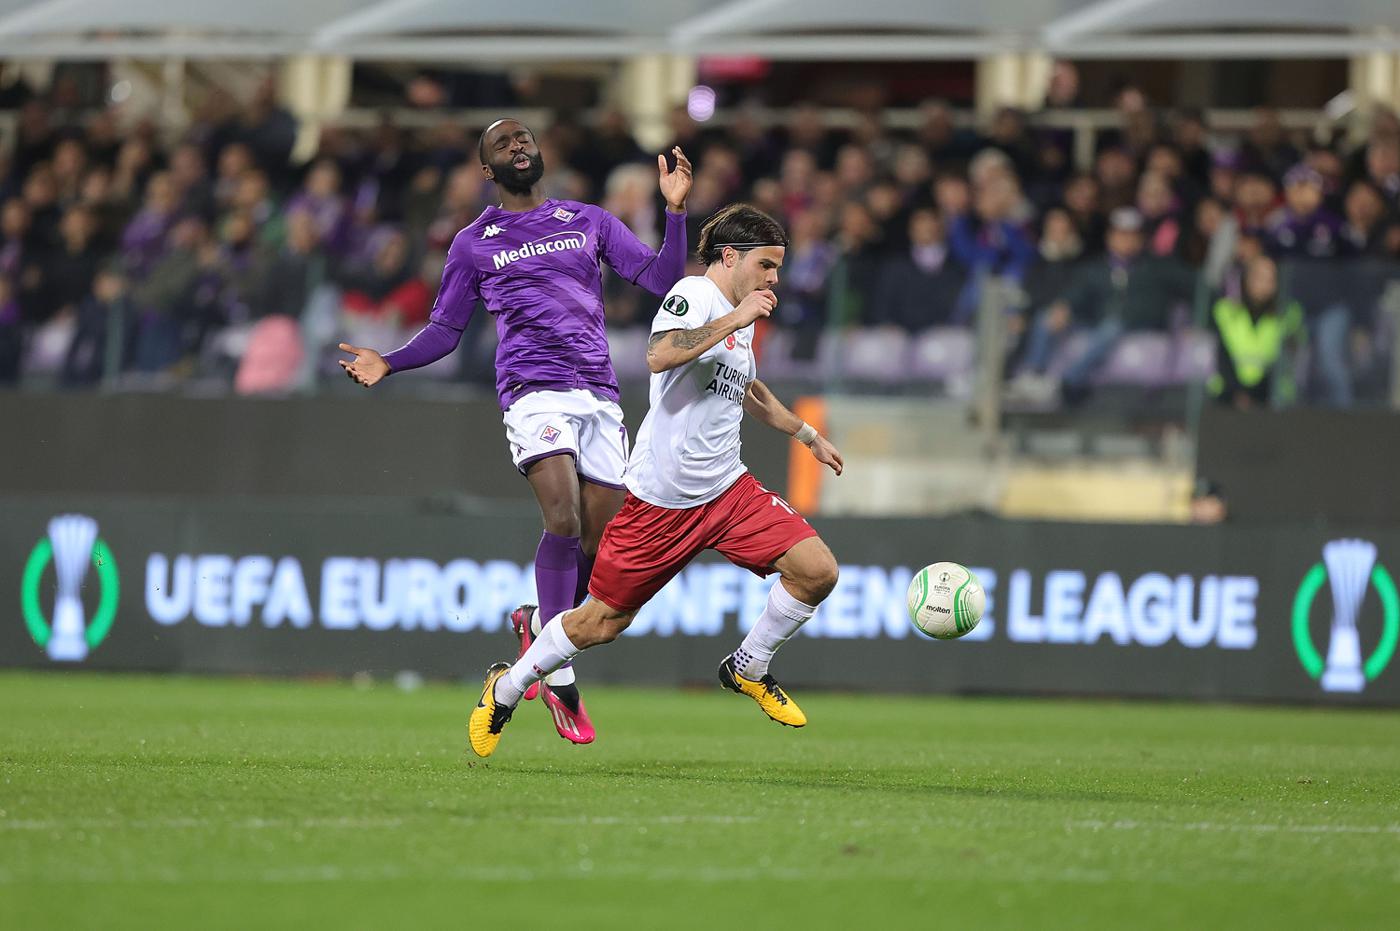 Sivasspor gegen Fiorentina - 1:4. Konferenz-Liga. Rückblick auf das Spiel, Statistik.